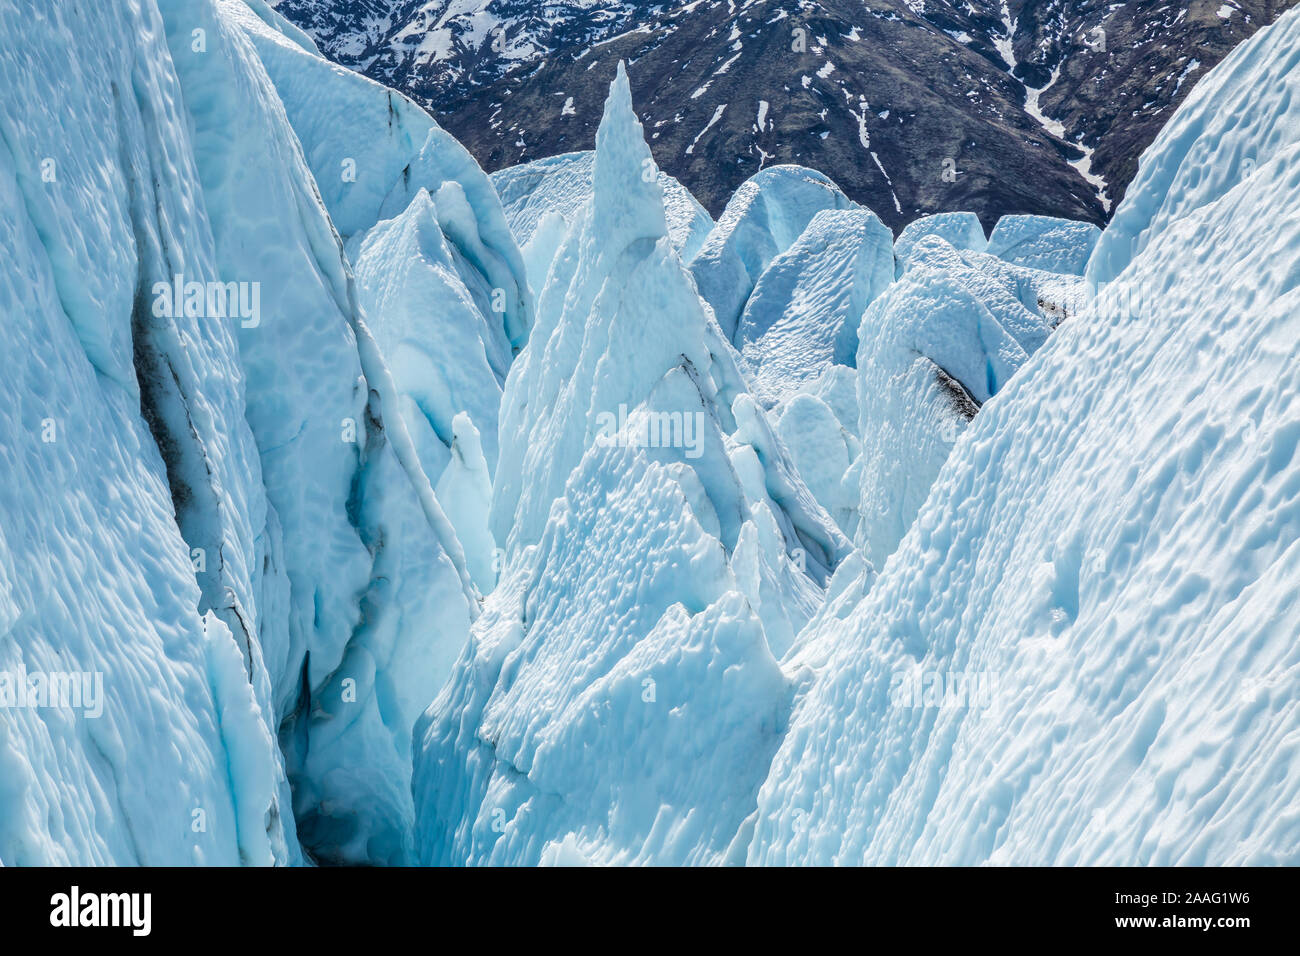 Blick nach unten in einen Eisfall des Matanuska Gletscher in Alaska. Gebrochene Eis, seracs und Gletscherspalten machen das Reisen durch unglaublich gefährlich. Stockfoto